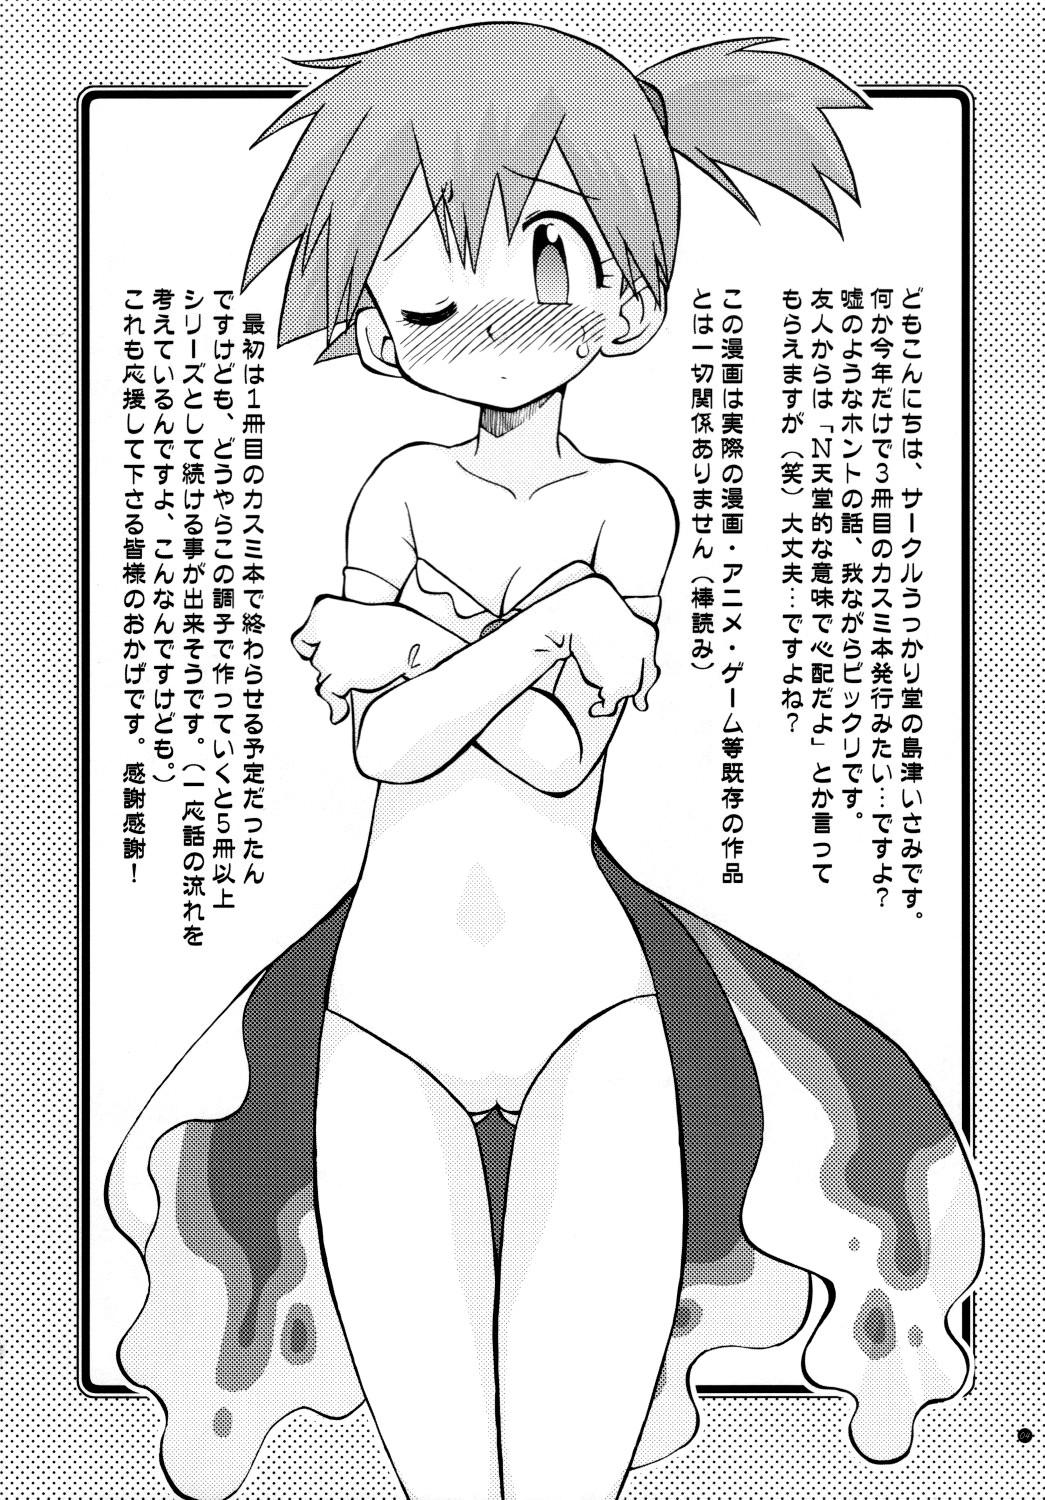 Cdzinha Mada Mada Dashiranai Koto no Takarabako - Pokemon Rubdown - Page 4